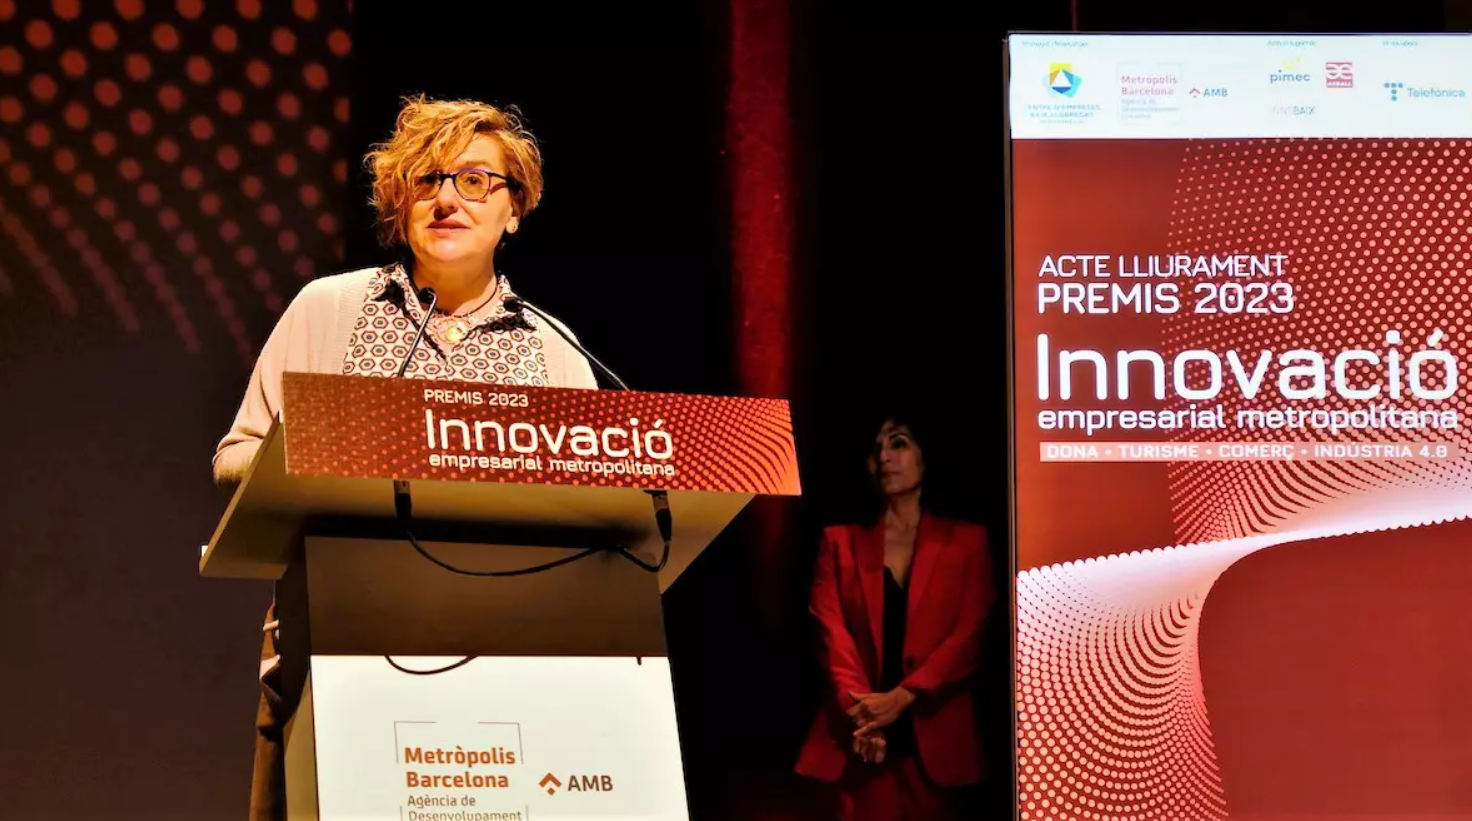 Cornellà fomenta la innovación empresarial con 24.000 euros en premios